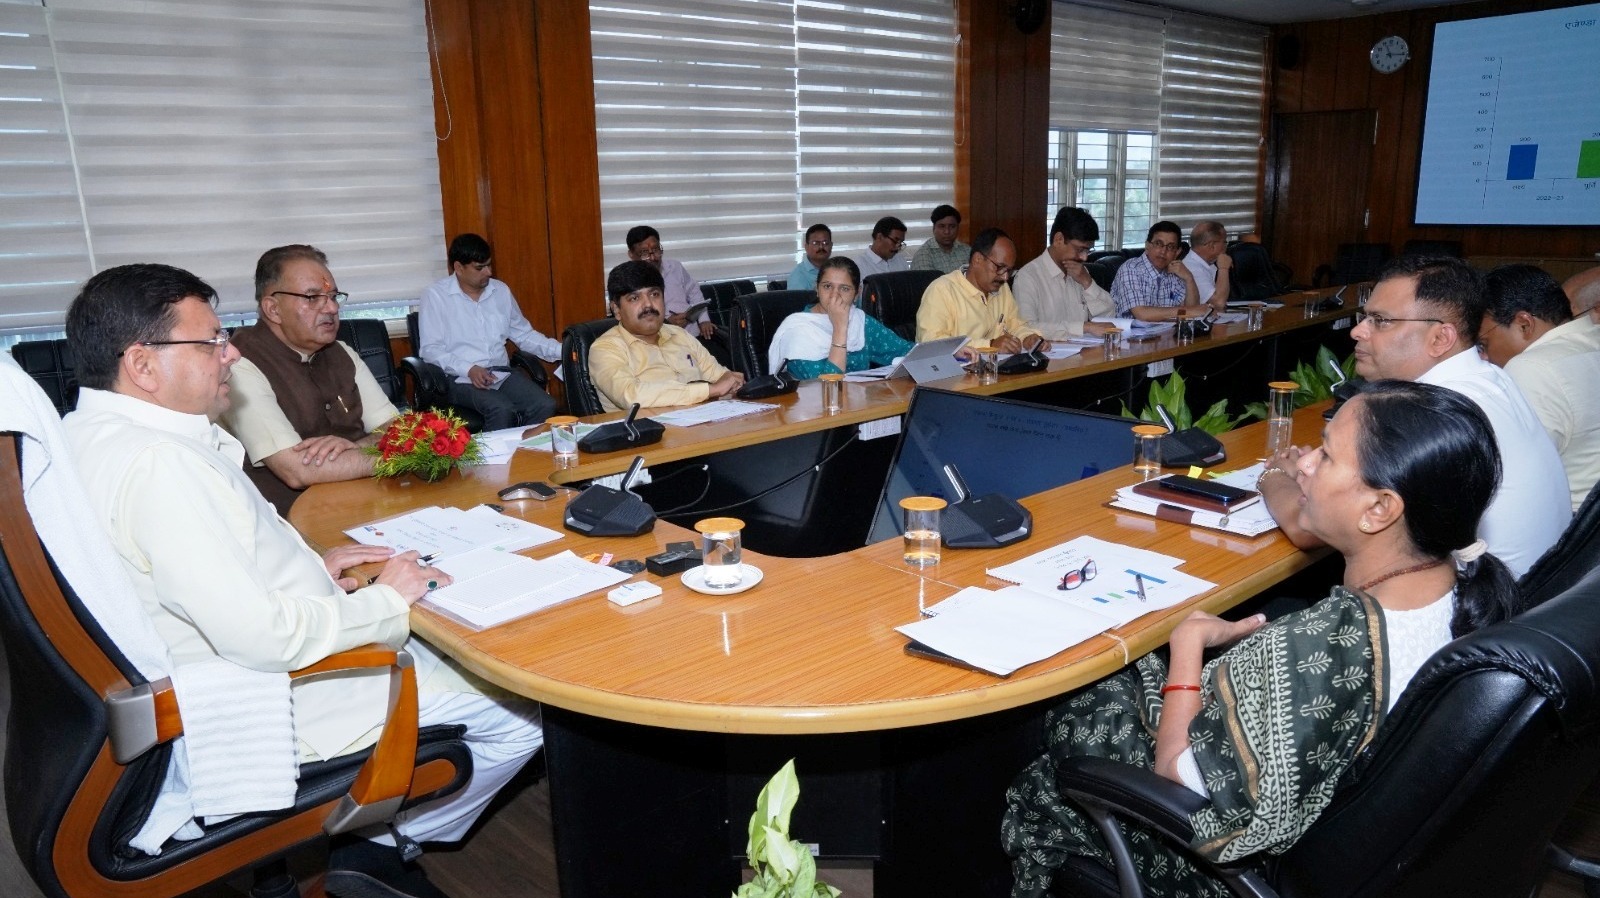 मुख्यमंत्री पुष्कर सिंह धामी ने सशक्त उत्तराखण्ड @ 25 के लक्ष्यों की प्राप्ति के संबंध में ग्राम्य विकास एवं पंचायतीराज विभाग की समीक्षा की